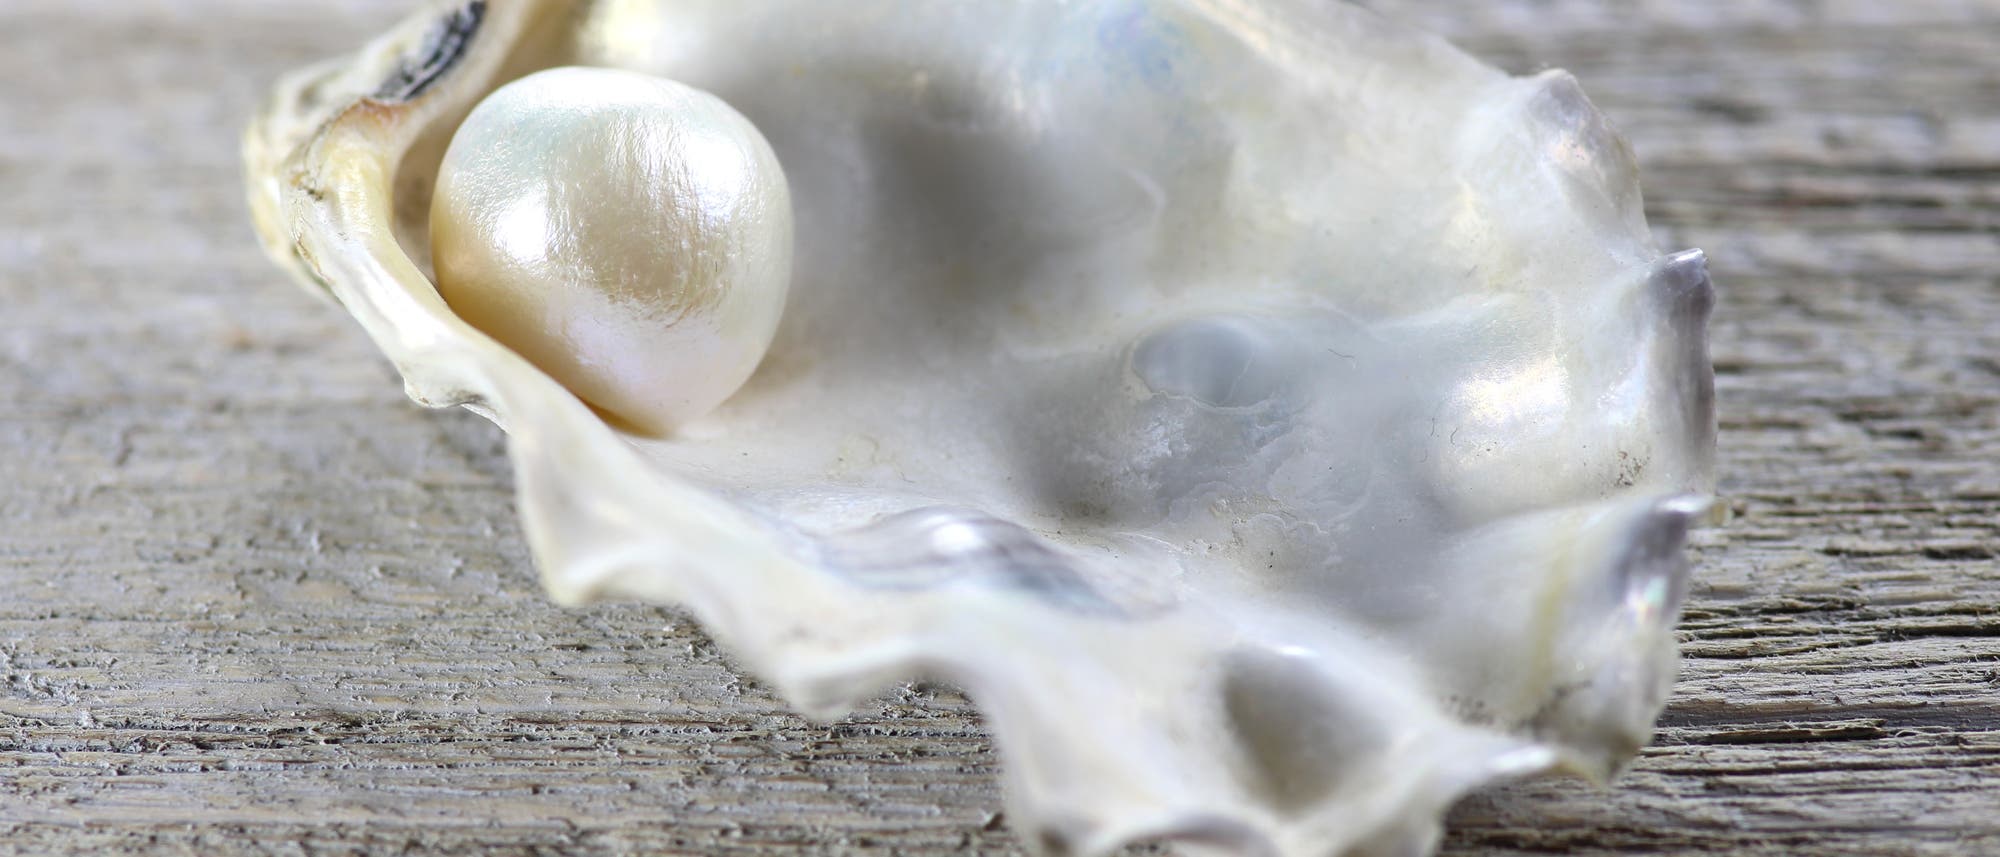 Perle in Muschelschale auf Holztisch